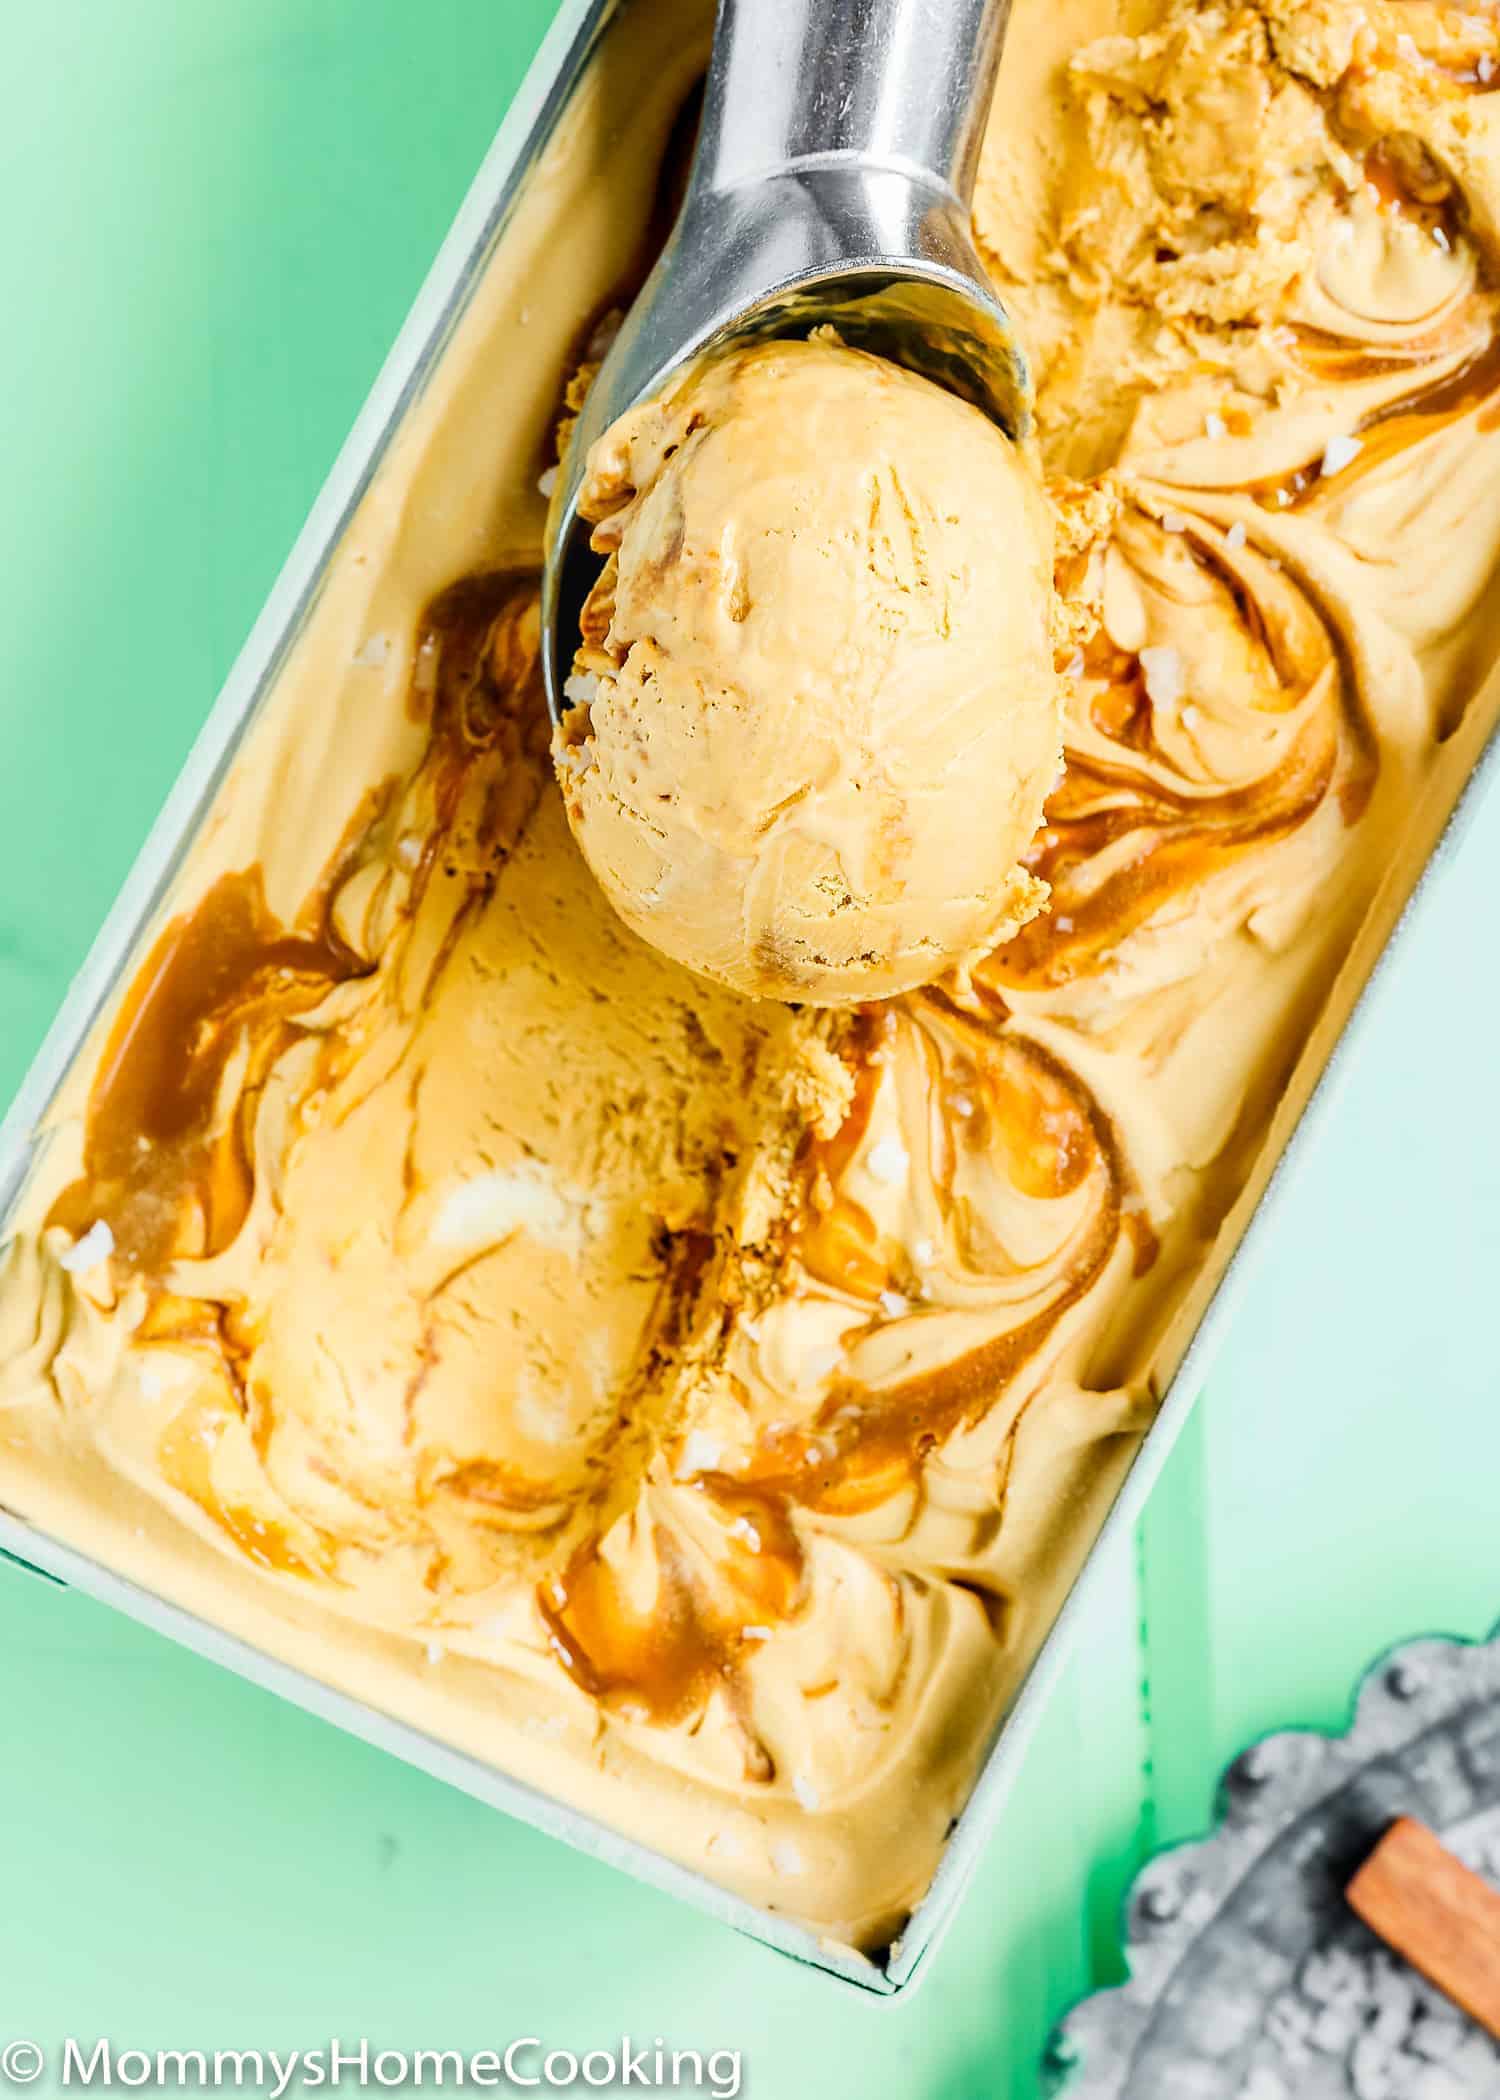 Ice cream scoop with Eggless Ice Cream